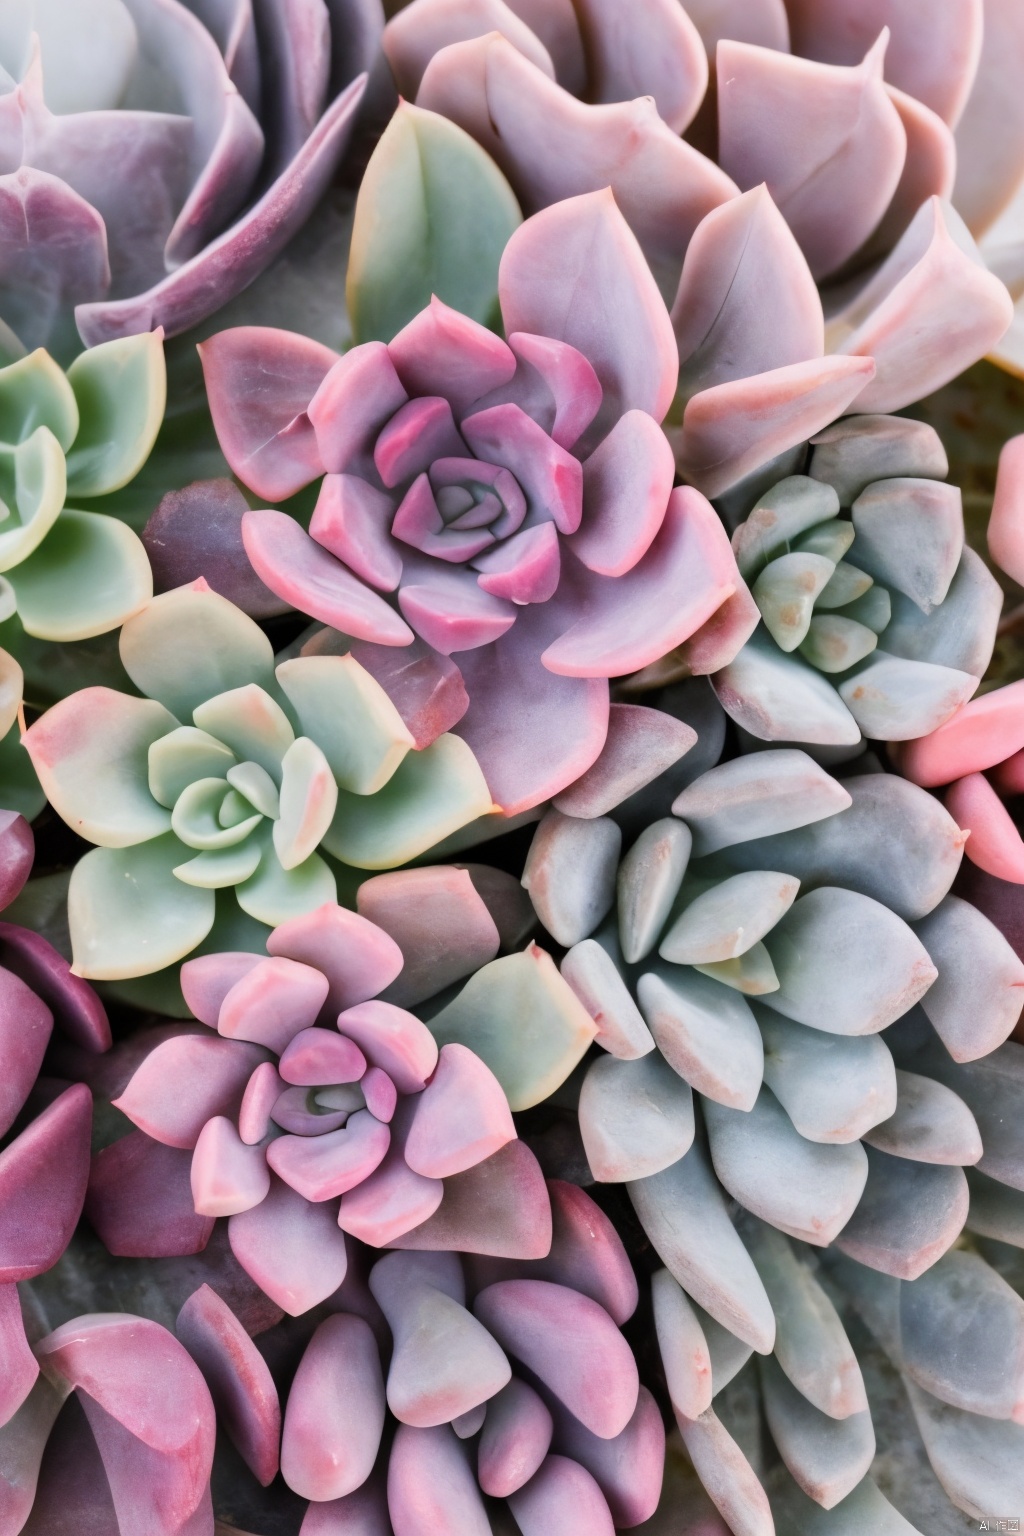  Succulent_Plants,succulent plants,pink theme,close-up, macro shot